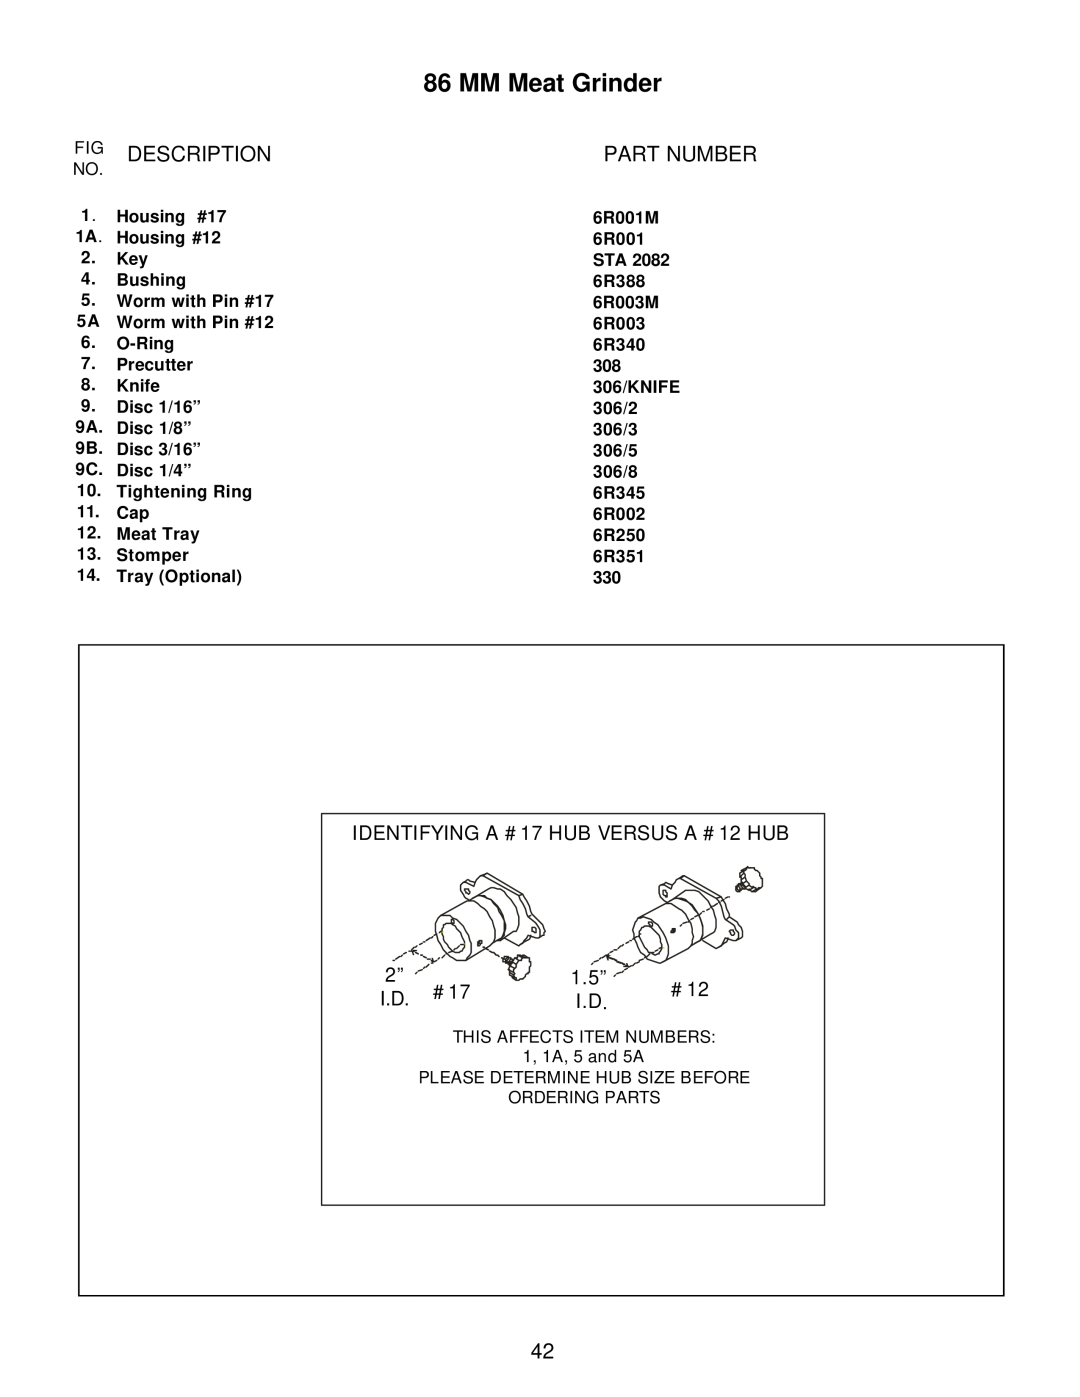 Varimixer 306, 86 MM manual Fig Description, Part Number, MM Meat Grinder, IDENTIFYING A #17 HUB VERSUS A #12 HUB, 1.5” 